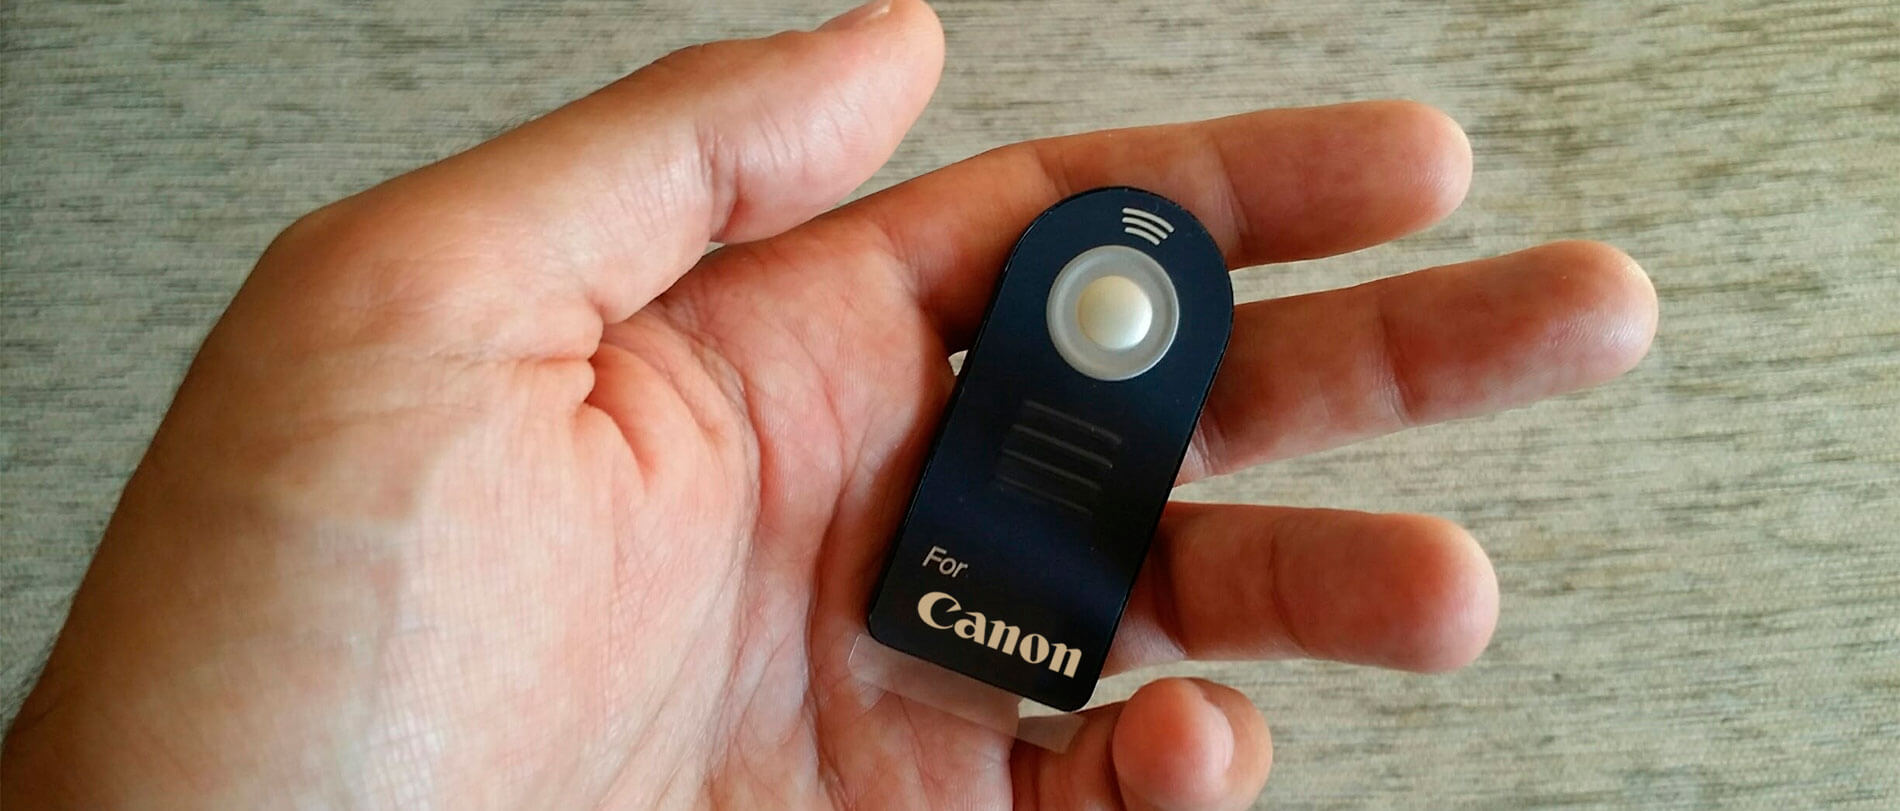 El disparador remoto de una cámara de fotos